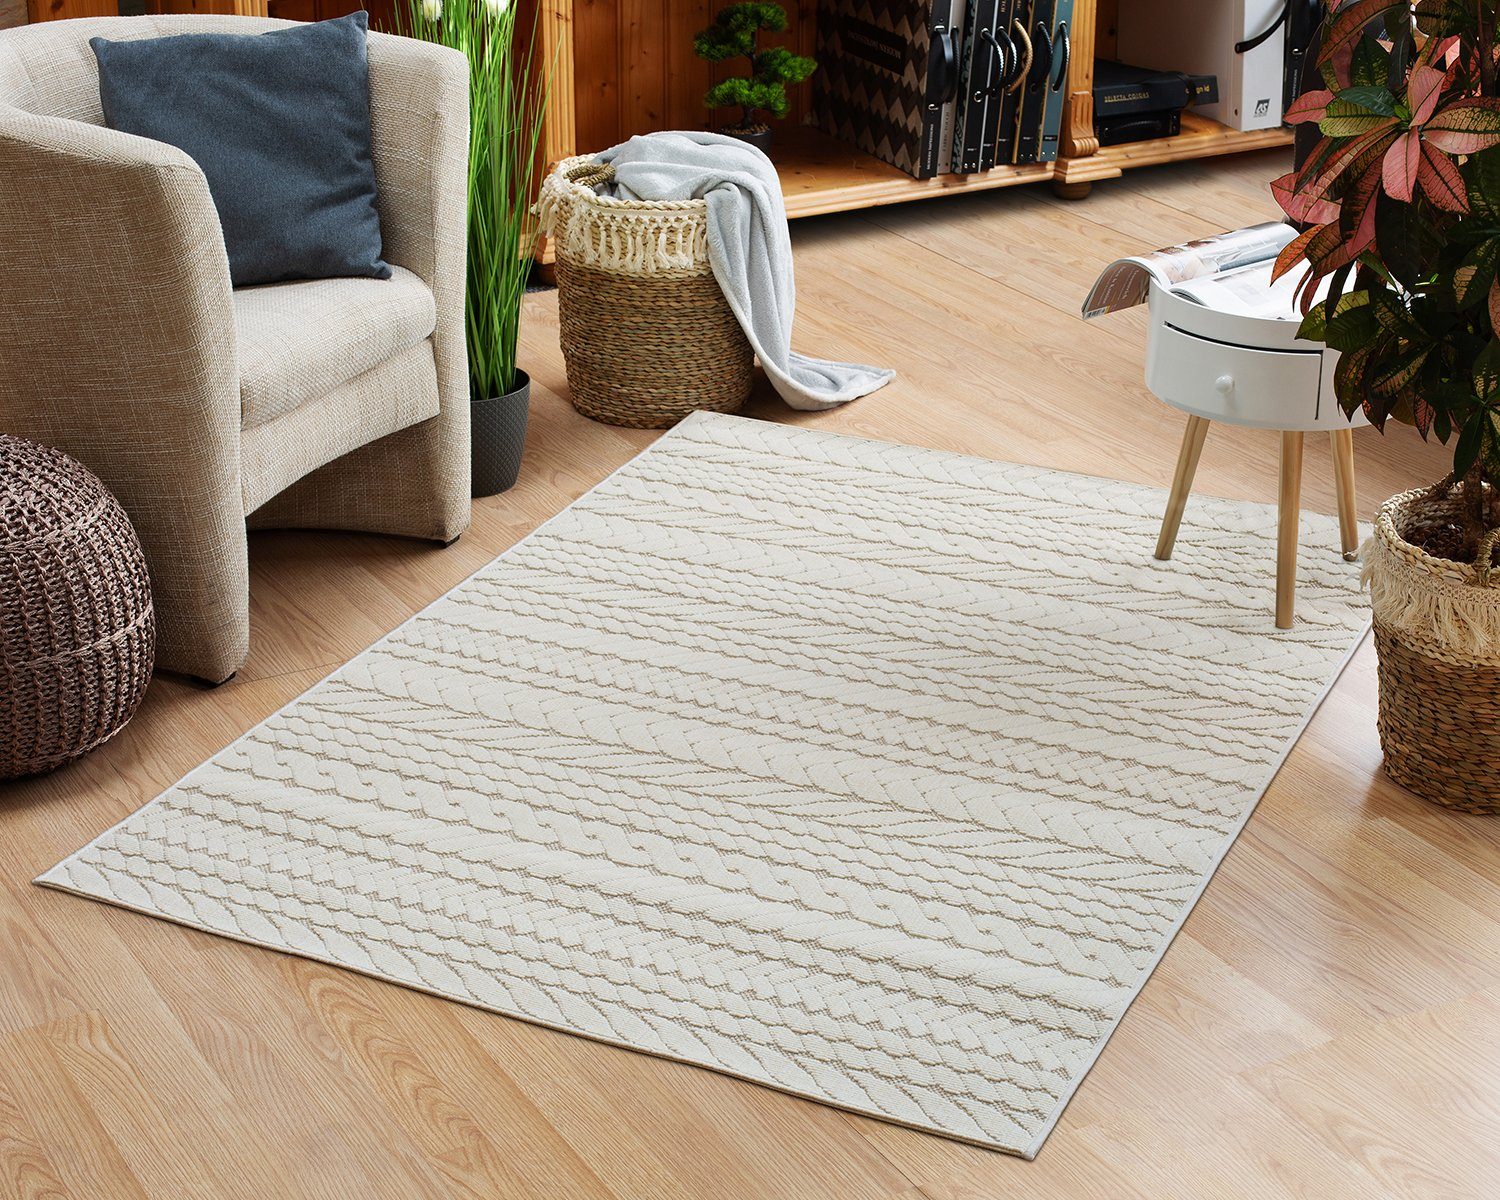 Teppich In- und Outdoor-Teppich Braided Pattern aus Kunststoff für Innen und Außen, DomDeco Beige